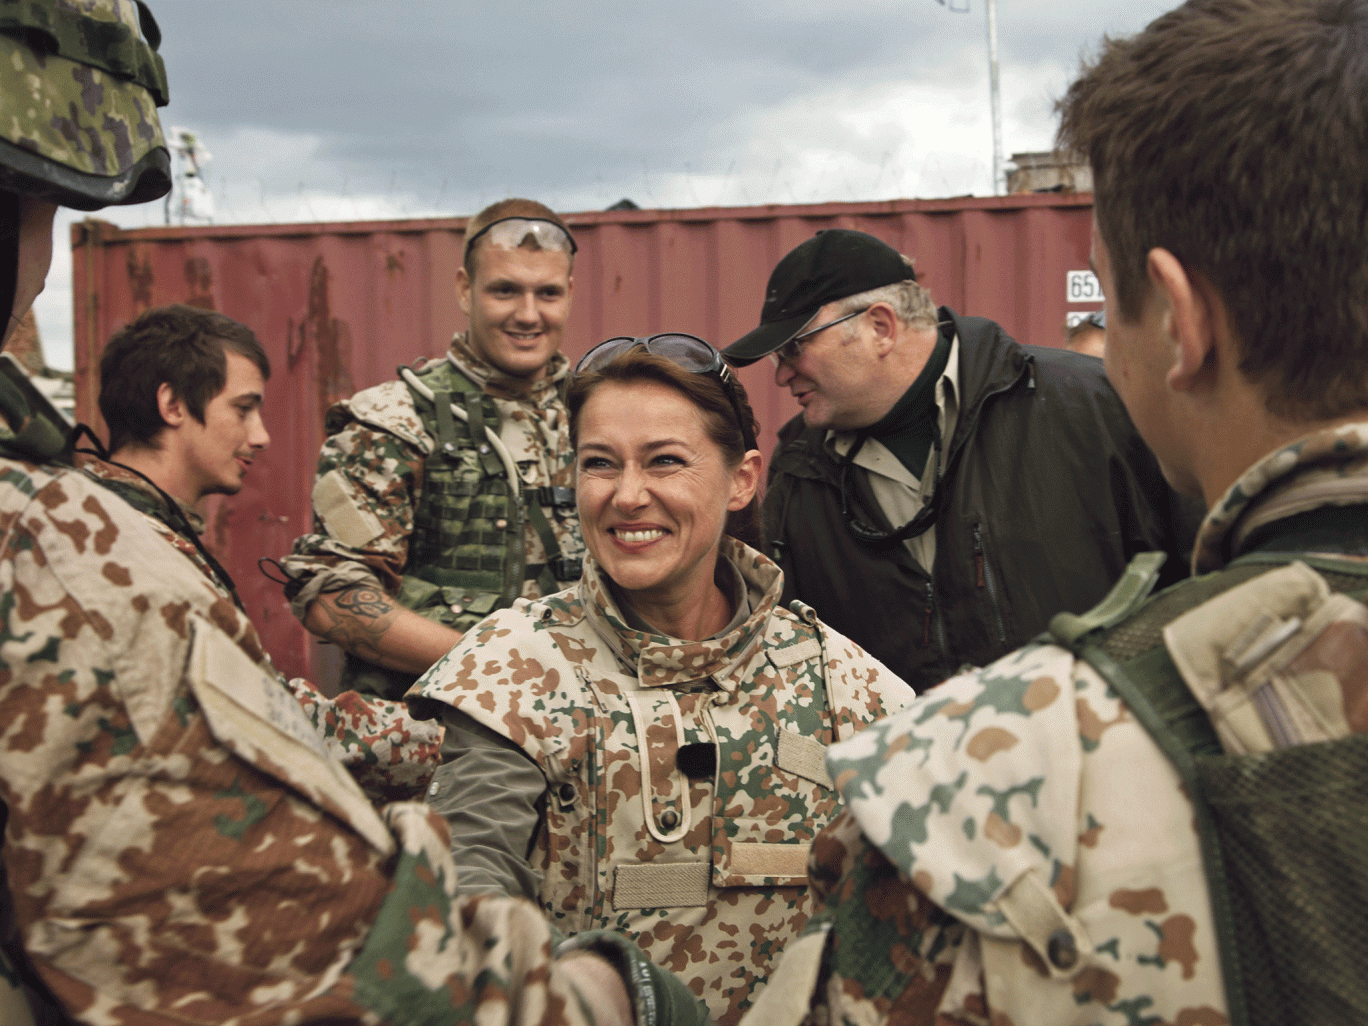 Birgitte Nyborg visitando a las tropas danesas en "Borgen". Foto: Independent.co.uk